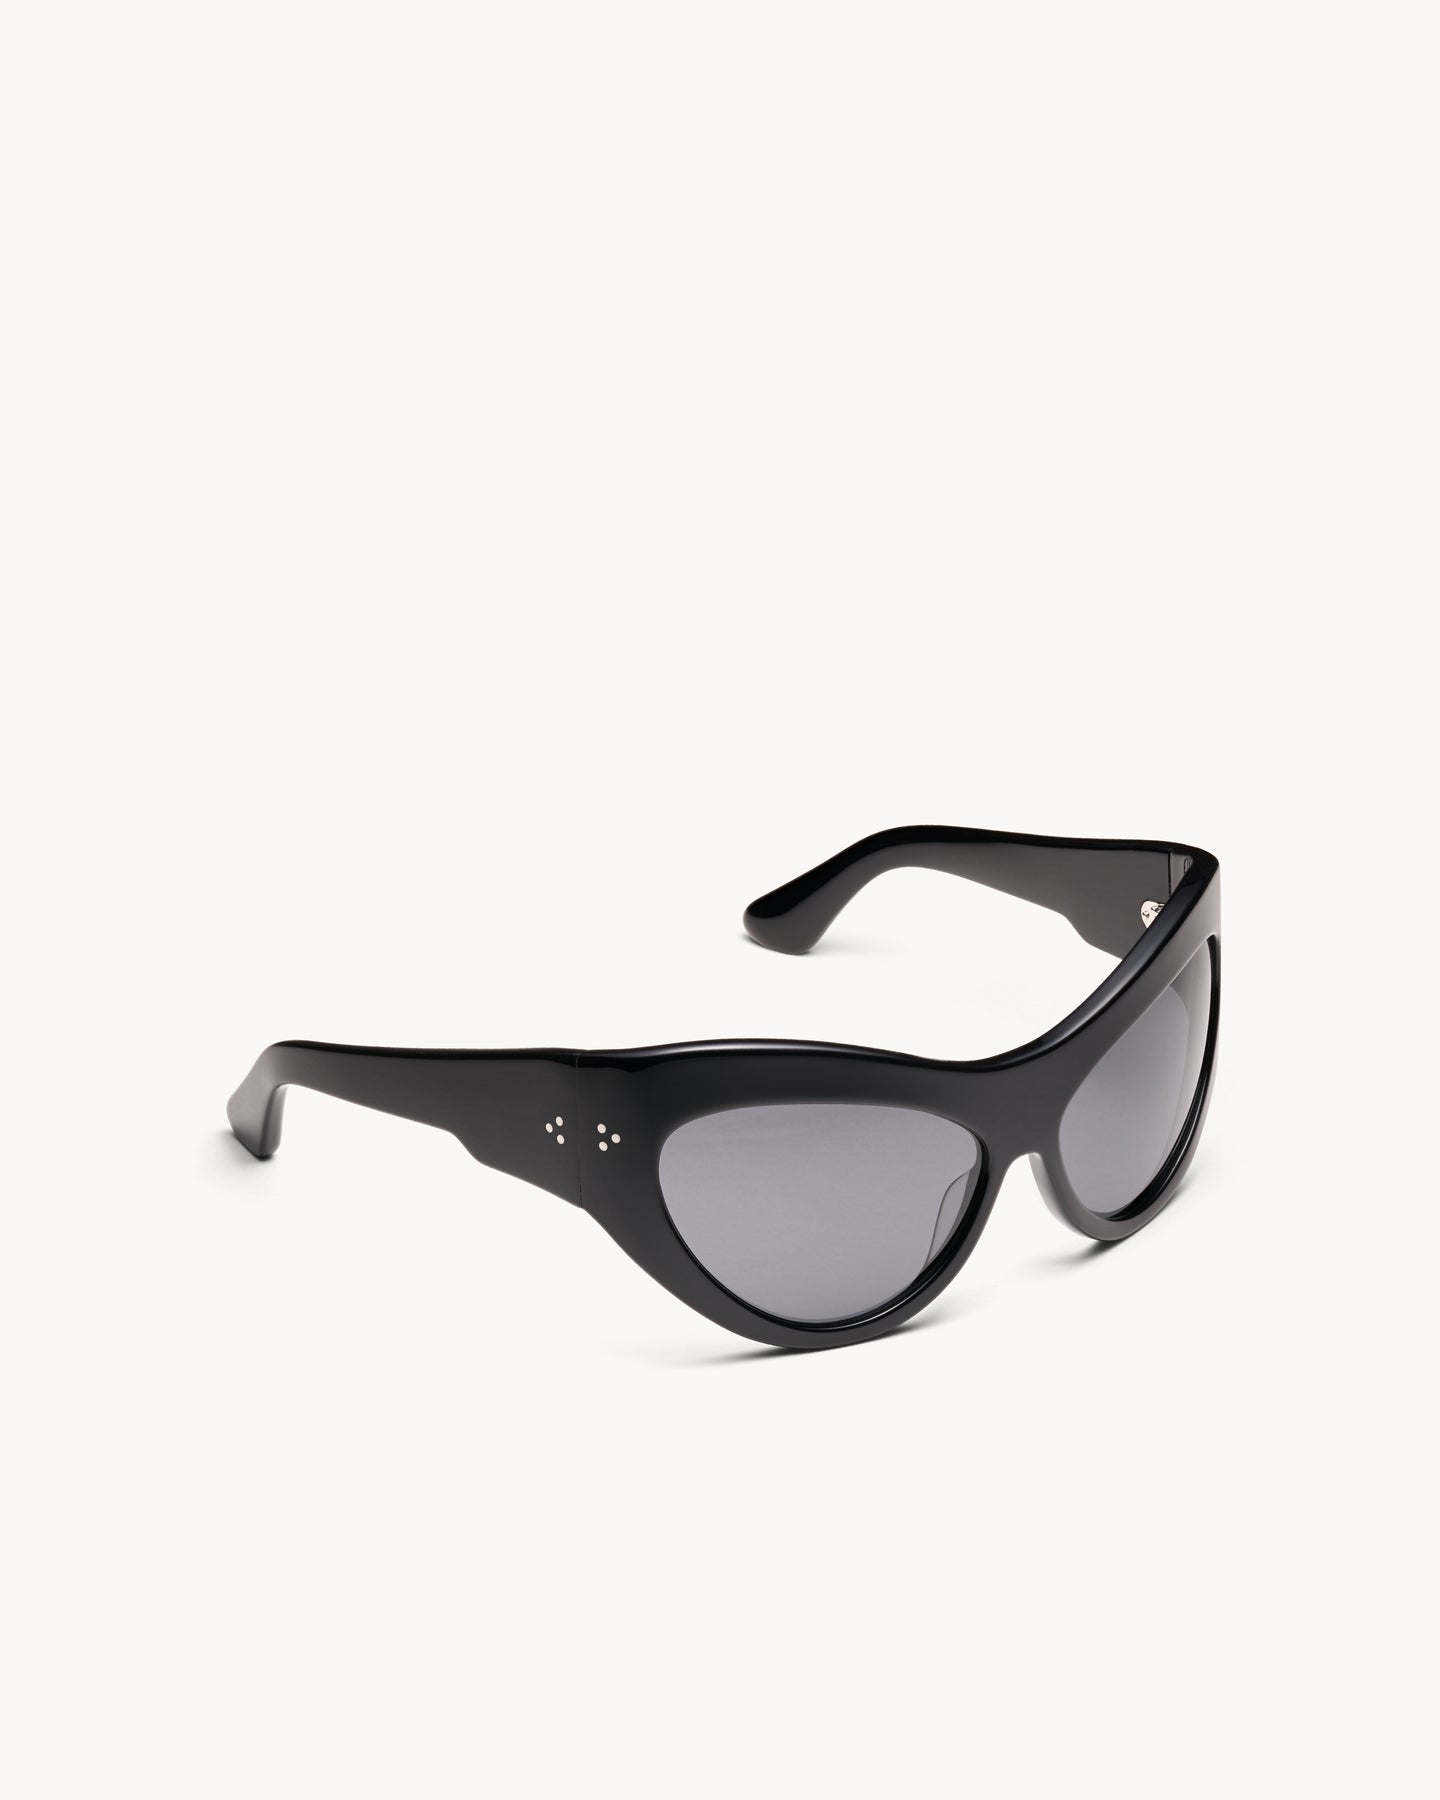 Port Tanger Darya Sunglasses in Black Acetate and Black Lenses 2